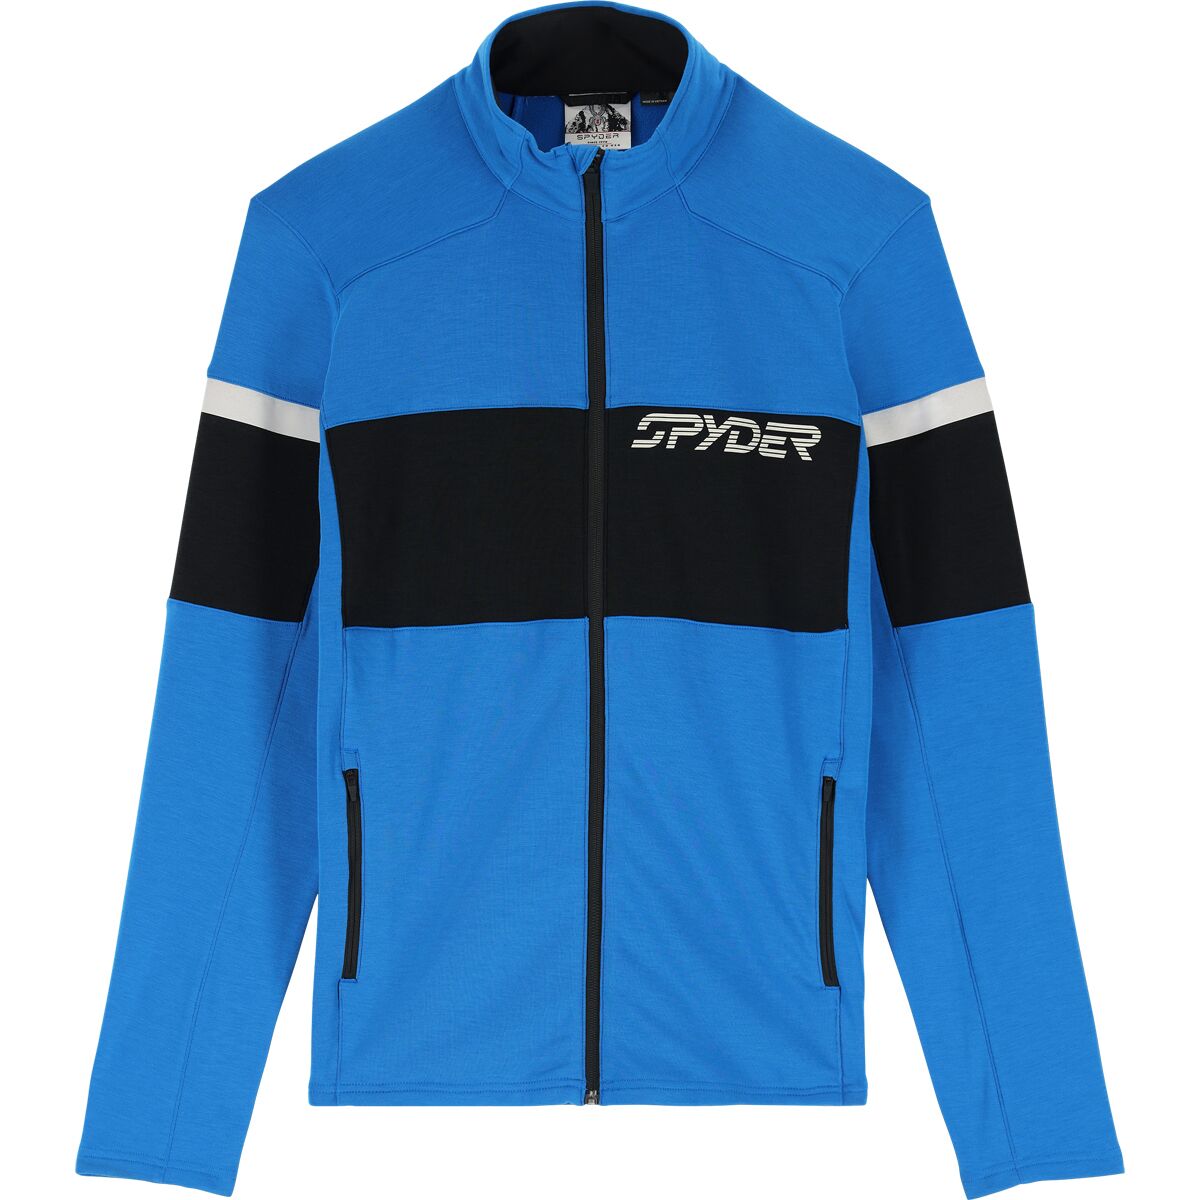 Spyder Speed Full-Zip Jacket - Men's